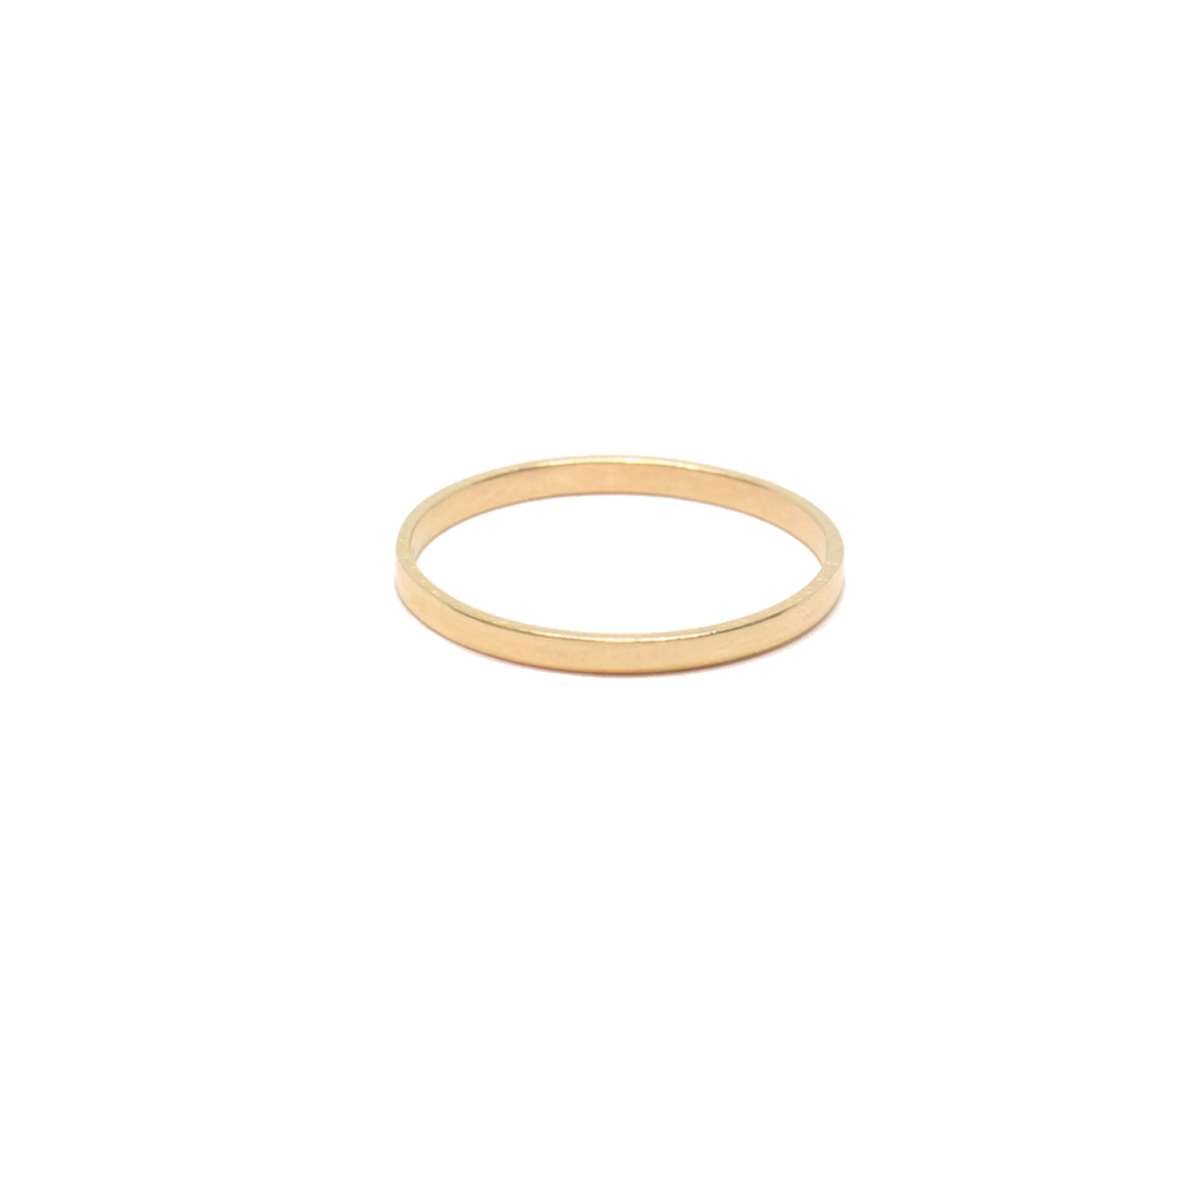 14KT gold plain flat wedding band stacking ring